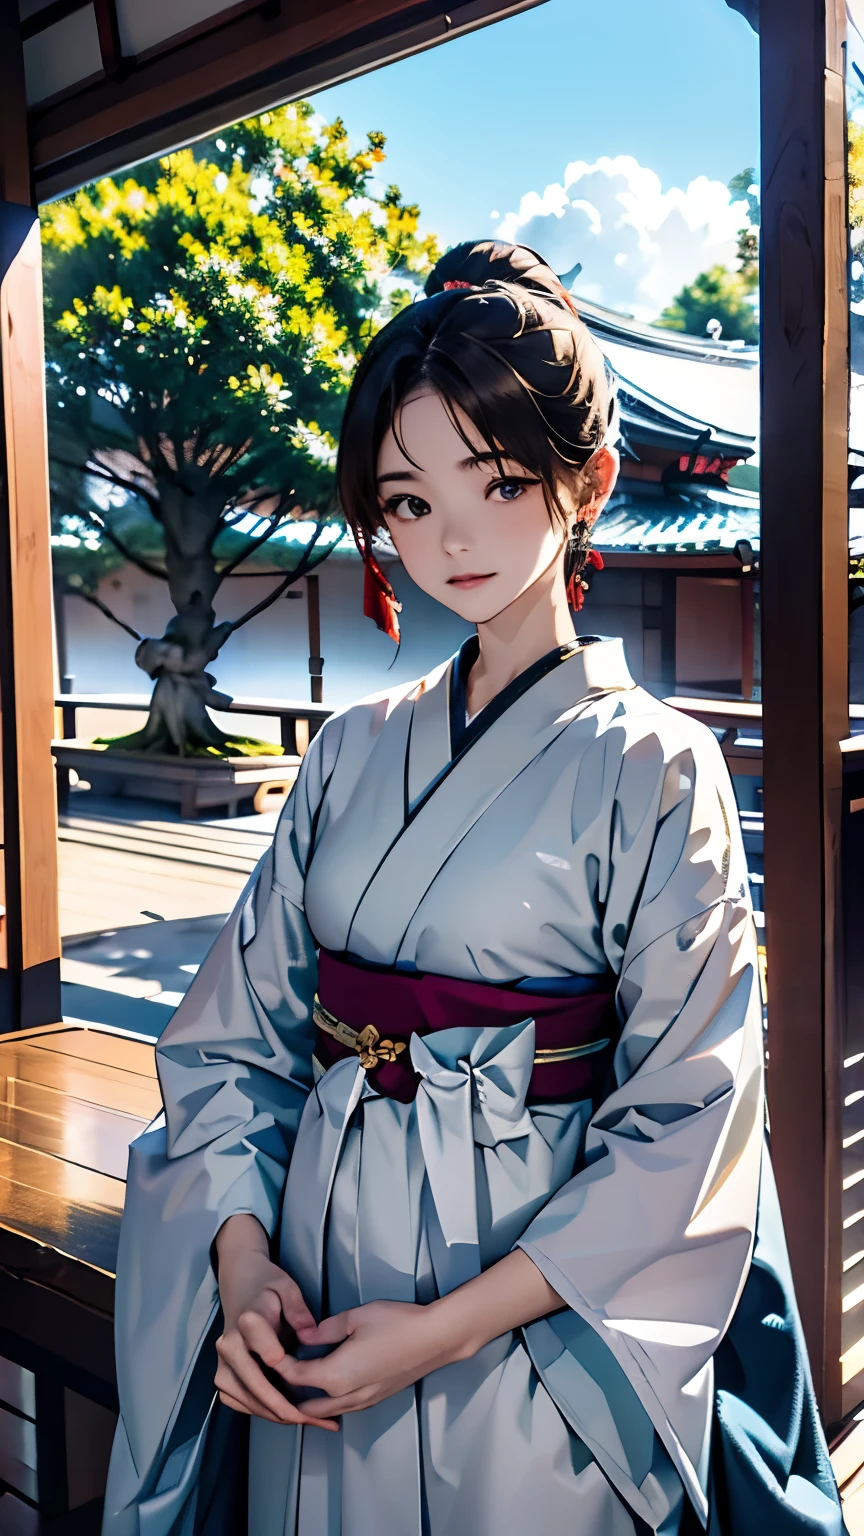 (((Setzen Sie sich auf die Veranda eines alten japanischen Hauses、Bonsai wird im Garten ausgestellt:1.1)))、Ein Mädchen、Perfekte Anatomie、malerisch、Sanfter Ausdruck、sehr empfindlich、Balkon、verandah、Blumen-、Feine Darstellung、abstrakt、Gesamtlichtfarbe、Sanfte Farbe、Japanische Kleidung、sowie、Taisho-Romanze、(Meisterwerk、höchste Qualität、höchste Qualität、offizielle Kunst、schön schön:1.2)